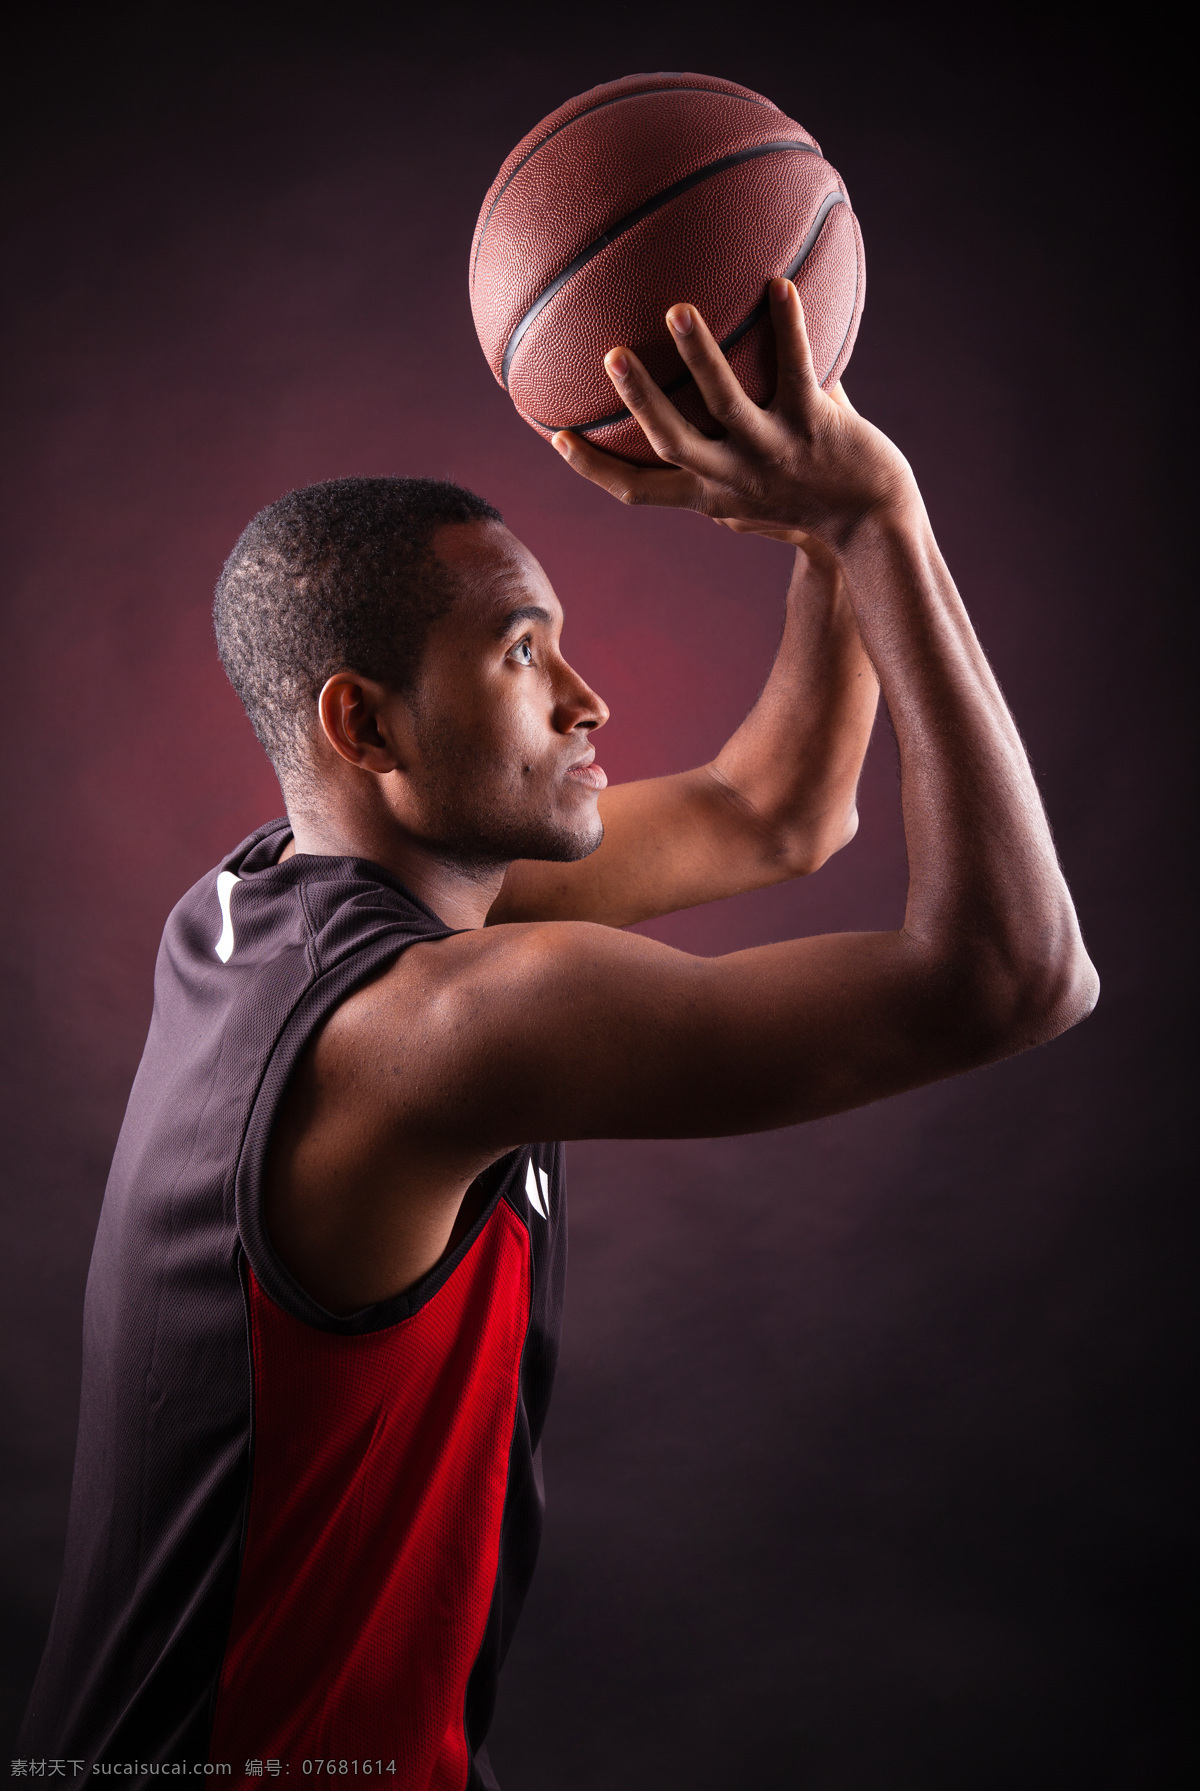 投篮 黑人 运动员 篮球 体育 运动 比赛 篮球主题 体育运动 生活百科